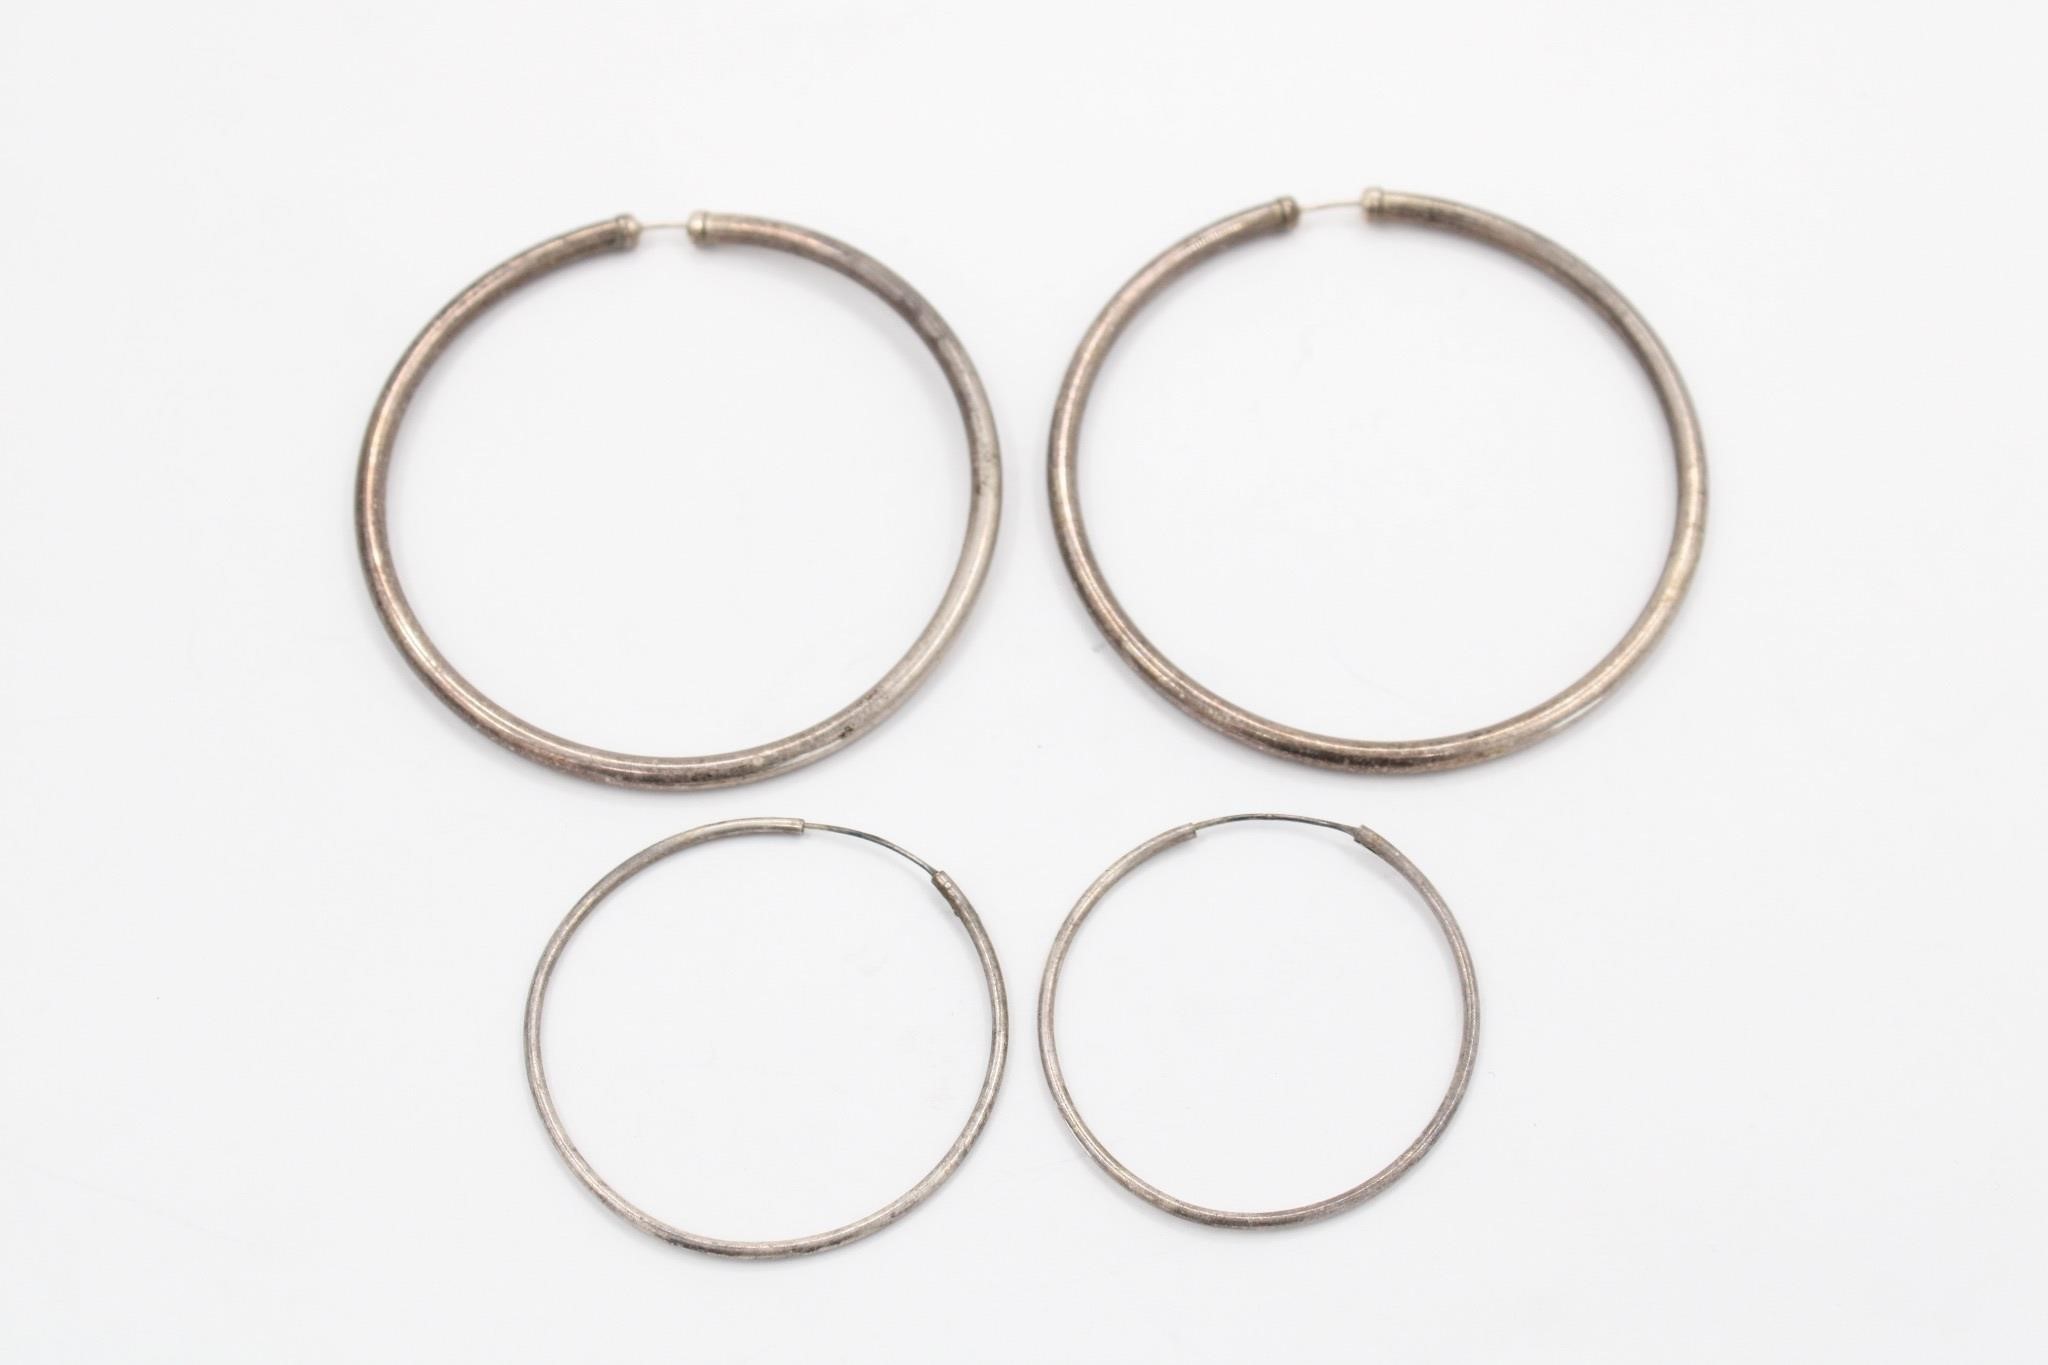 (2) Sets of Silver Hoop Earrings